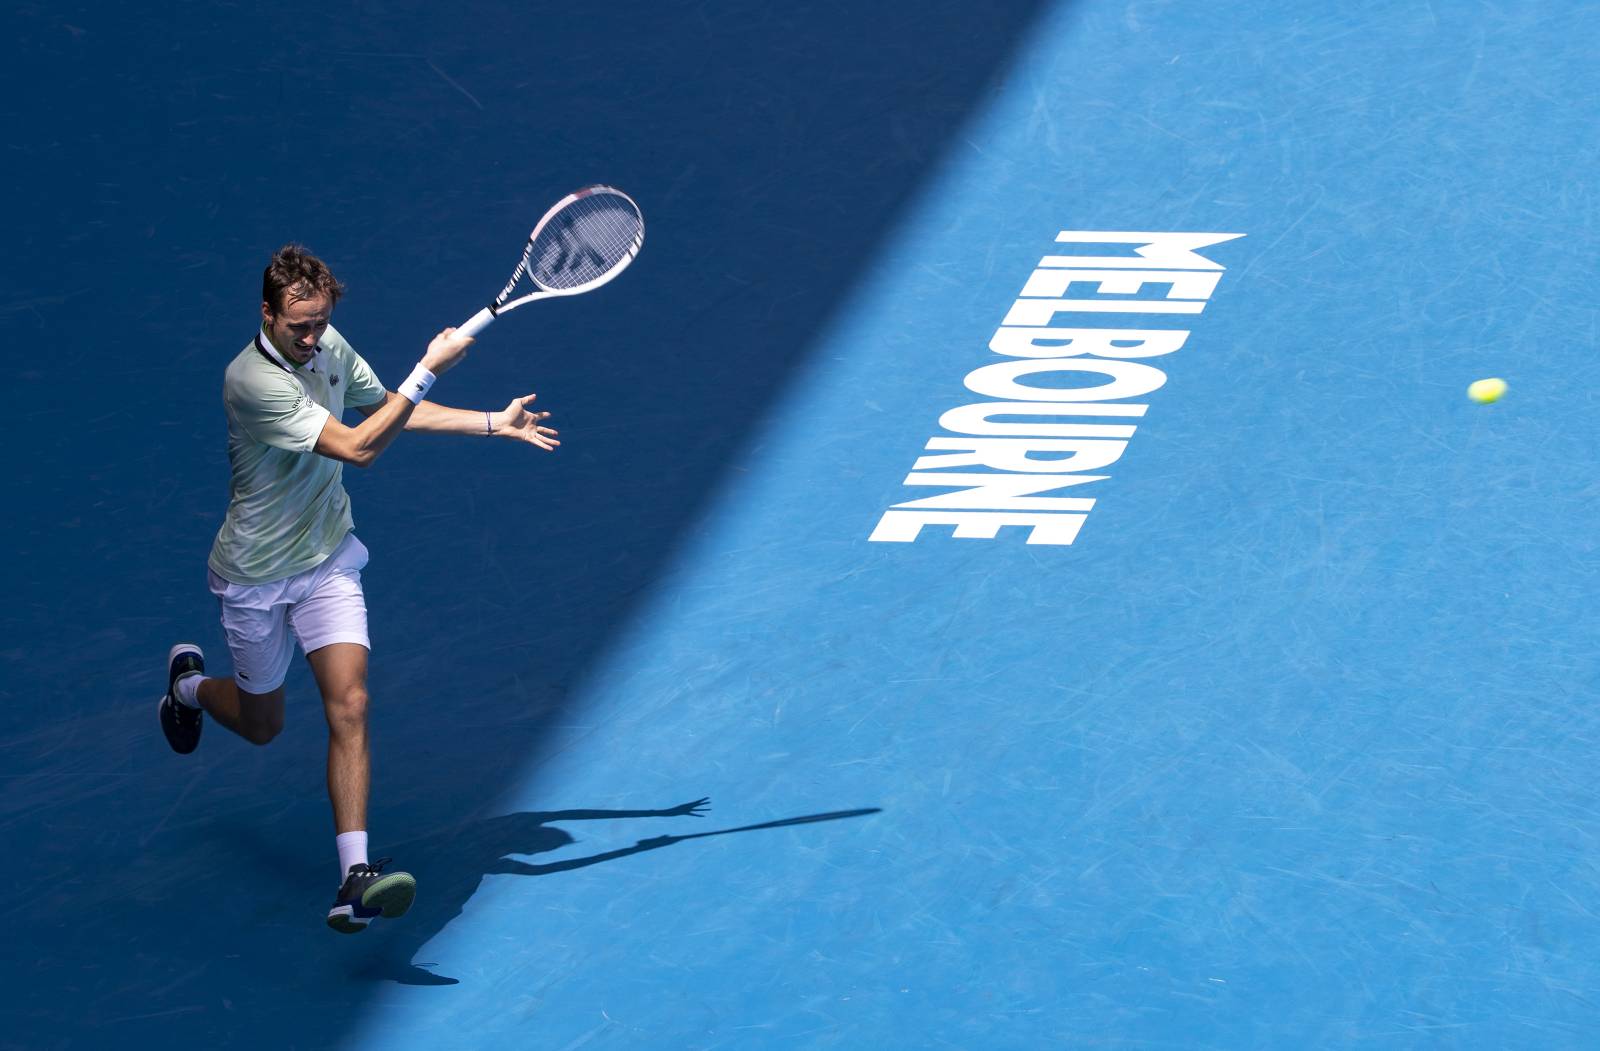 Медведев вышел в 1/16 финала Открытого чемпионата Австралии, отдав один сет Кирьосу